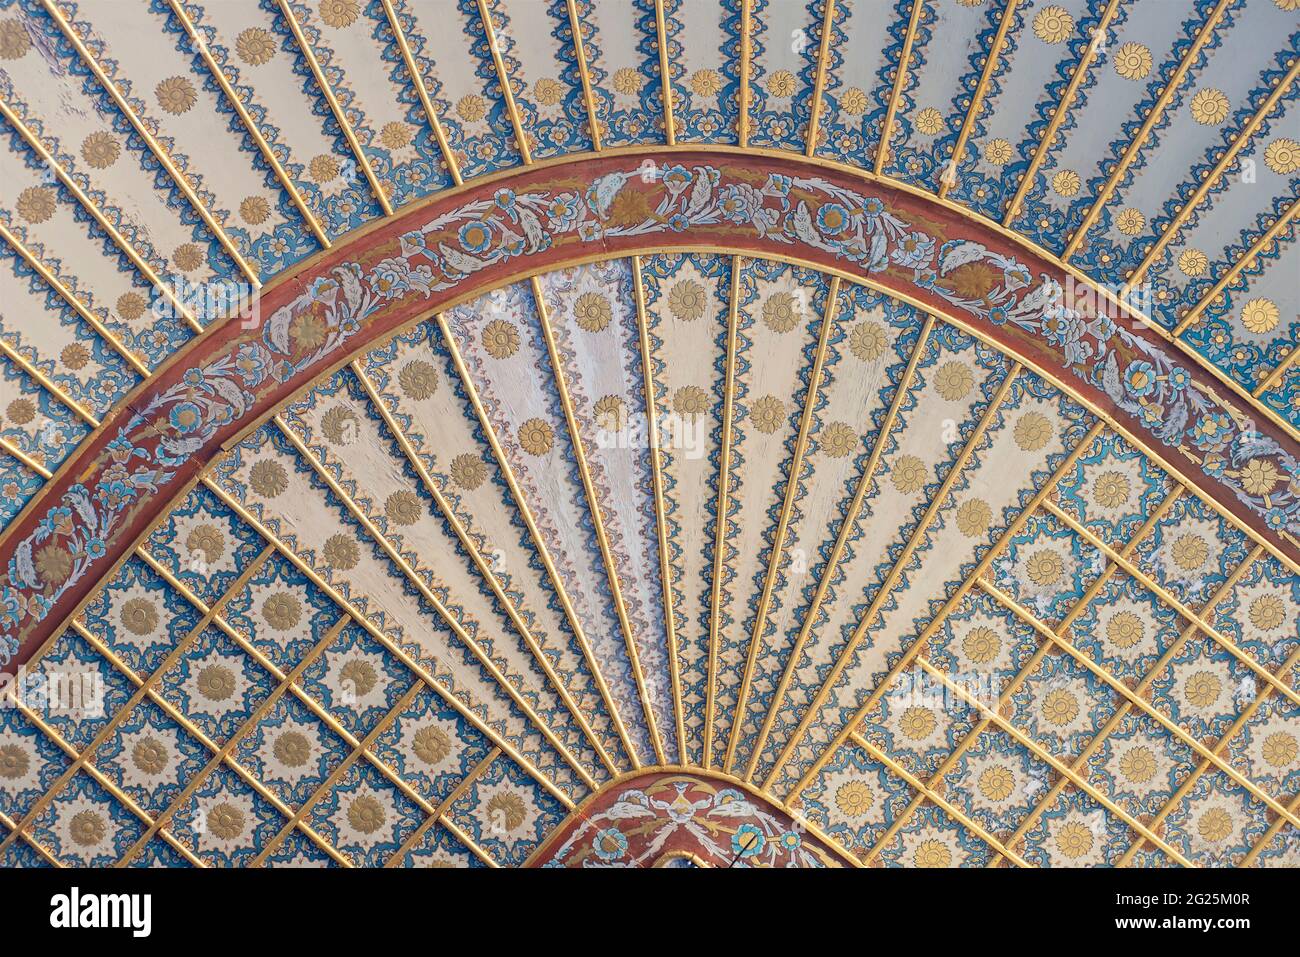 Particolare di decorazione ornamentale su un soffitto nel cortile dei favoriti nell'Harem Imperiale del Palazzo Topkapi. Istanbul, Turchia. Foto Stock